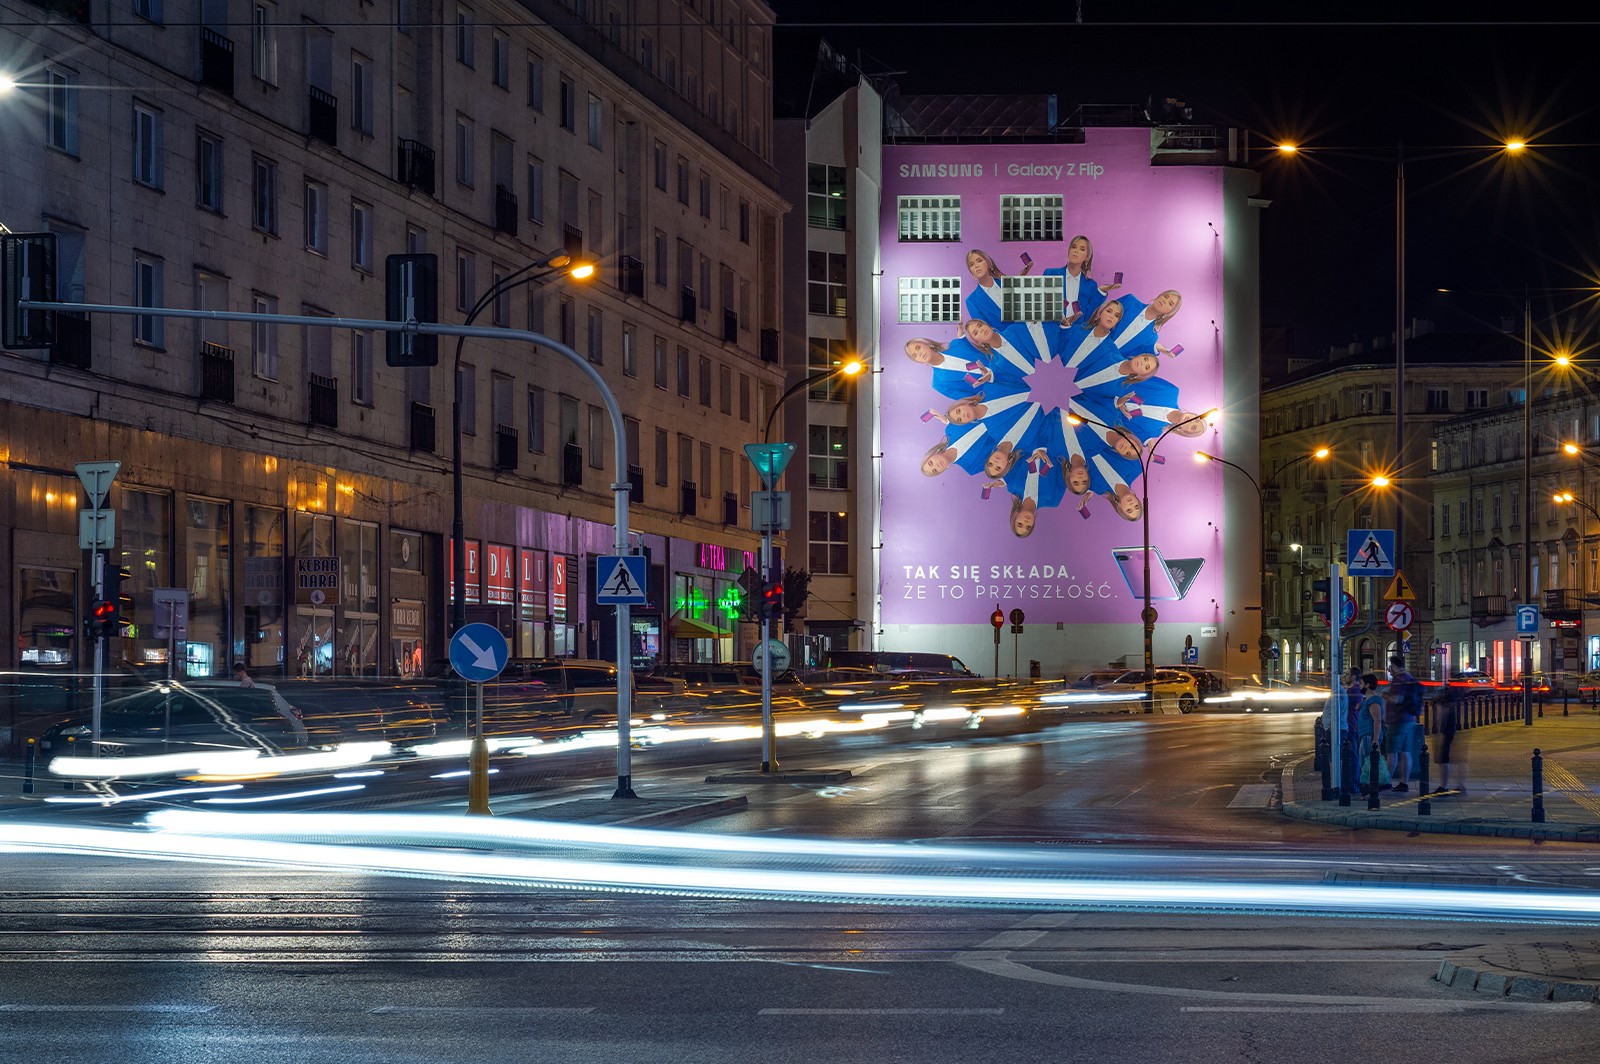 Mural reklamowy dla Samsung Polska na ulicy Brackiej w Warszawie | Samsung Galaxy Z Flip | Portfolio